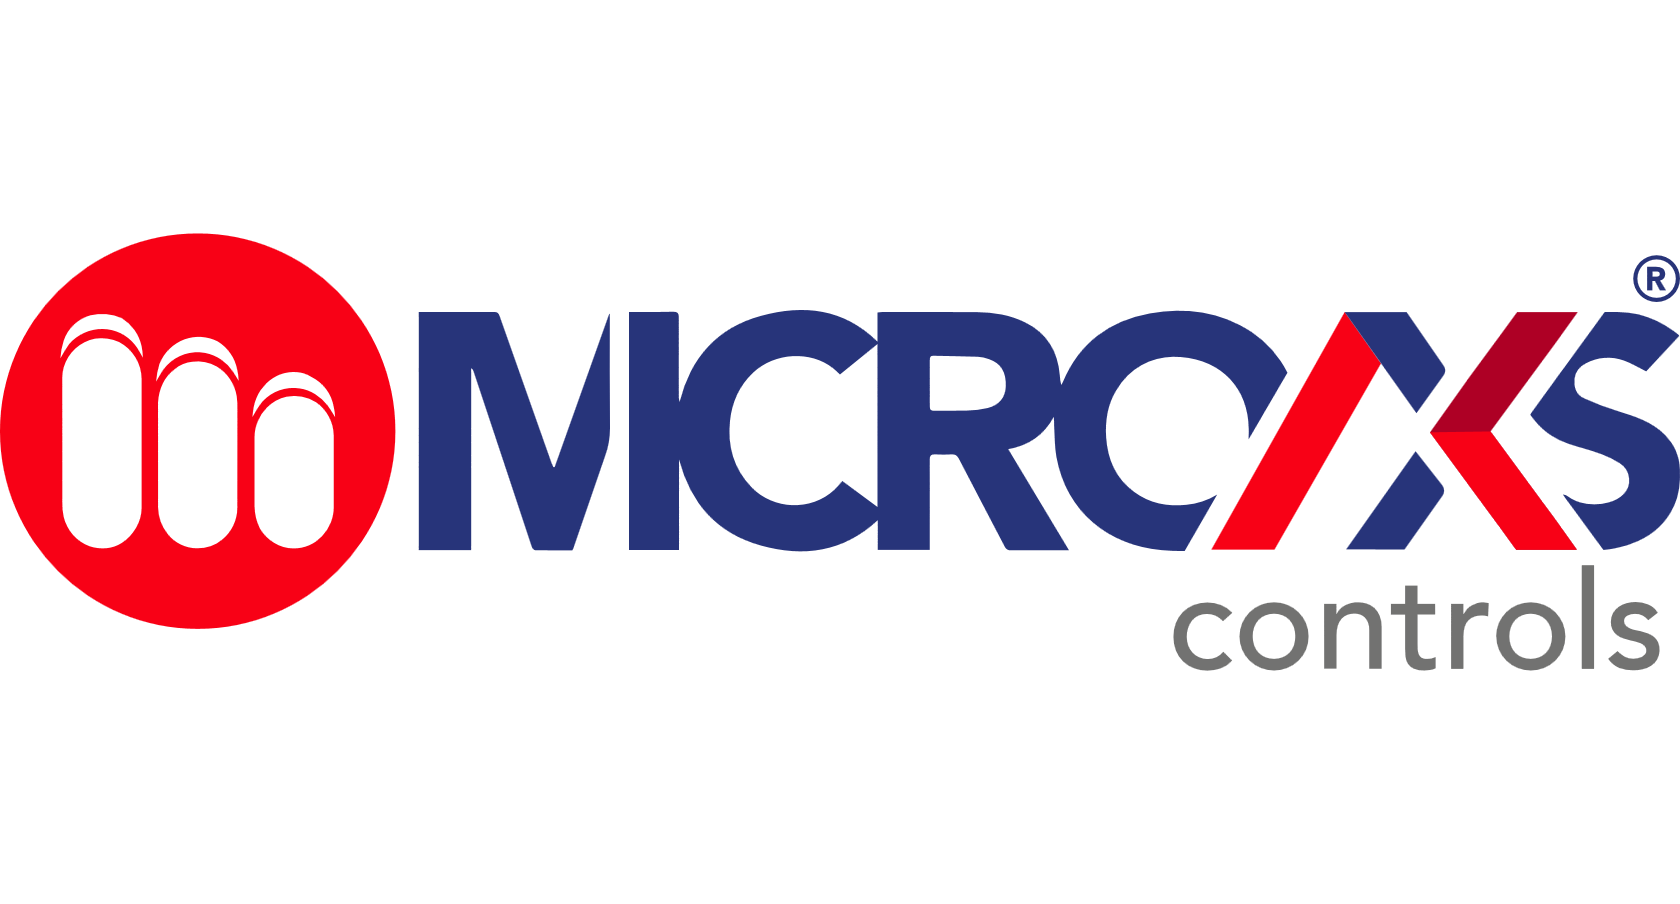 Company Logo For Microaxs'